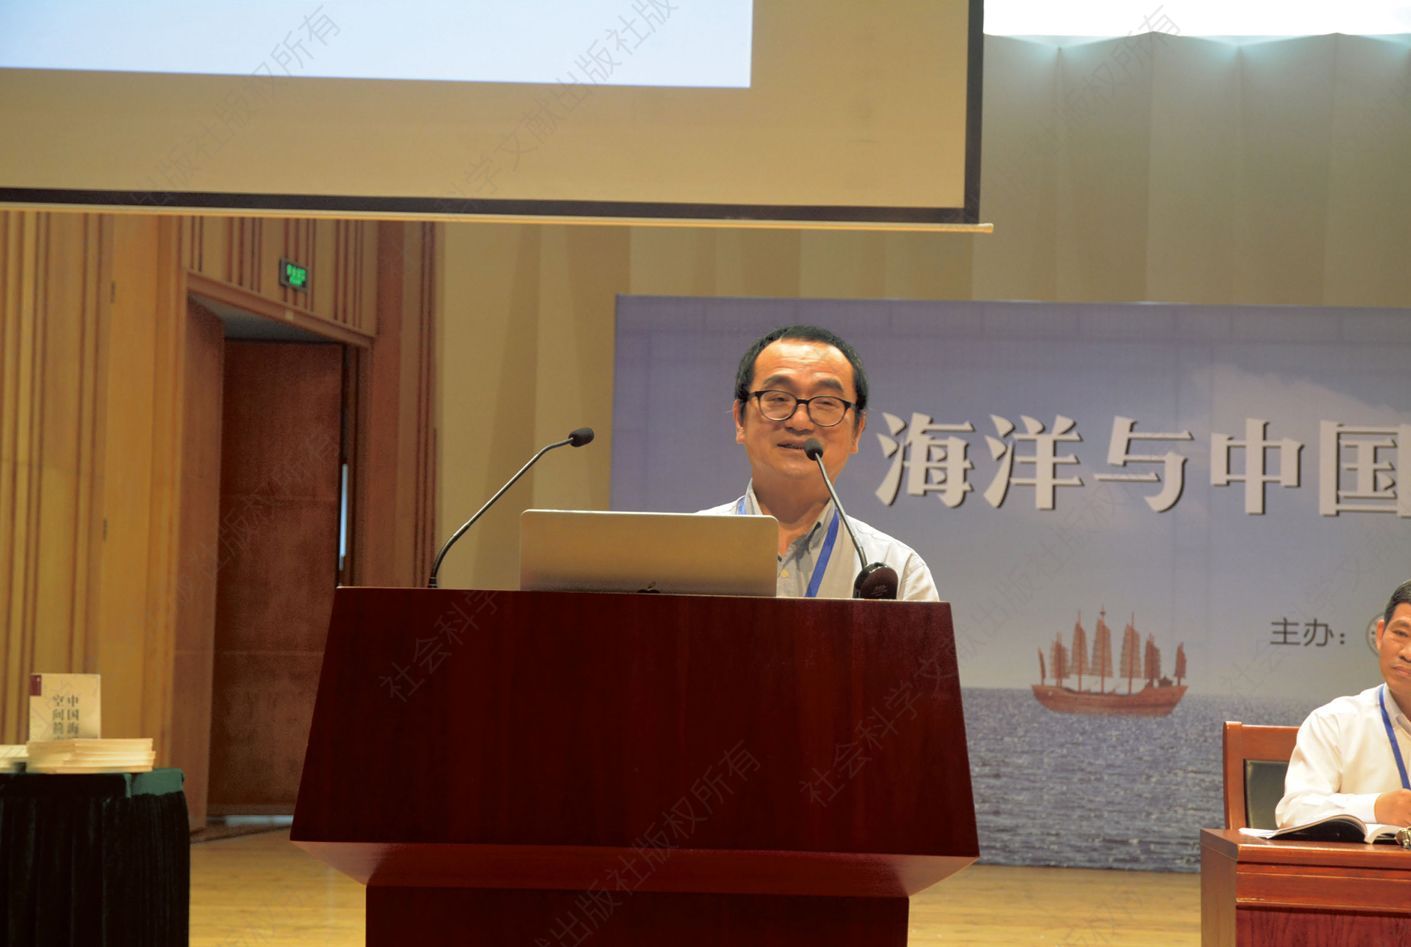 蔡志祥在大会演讲